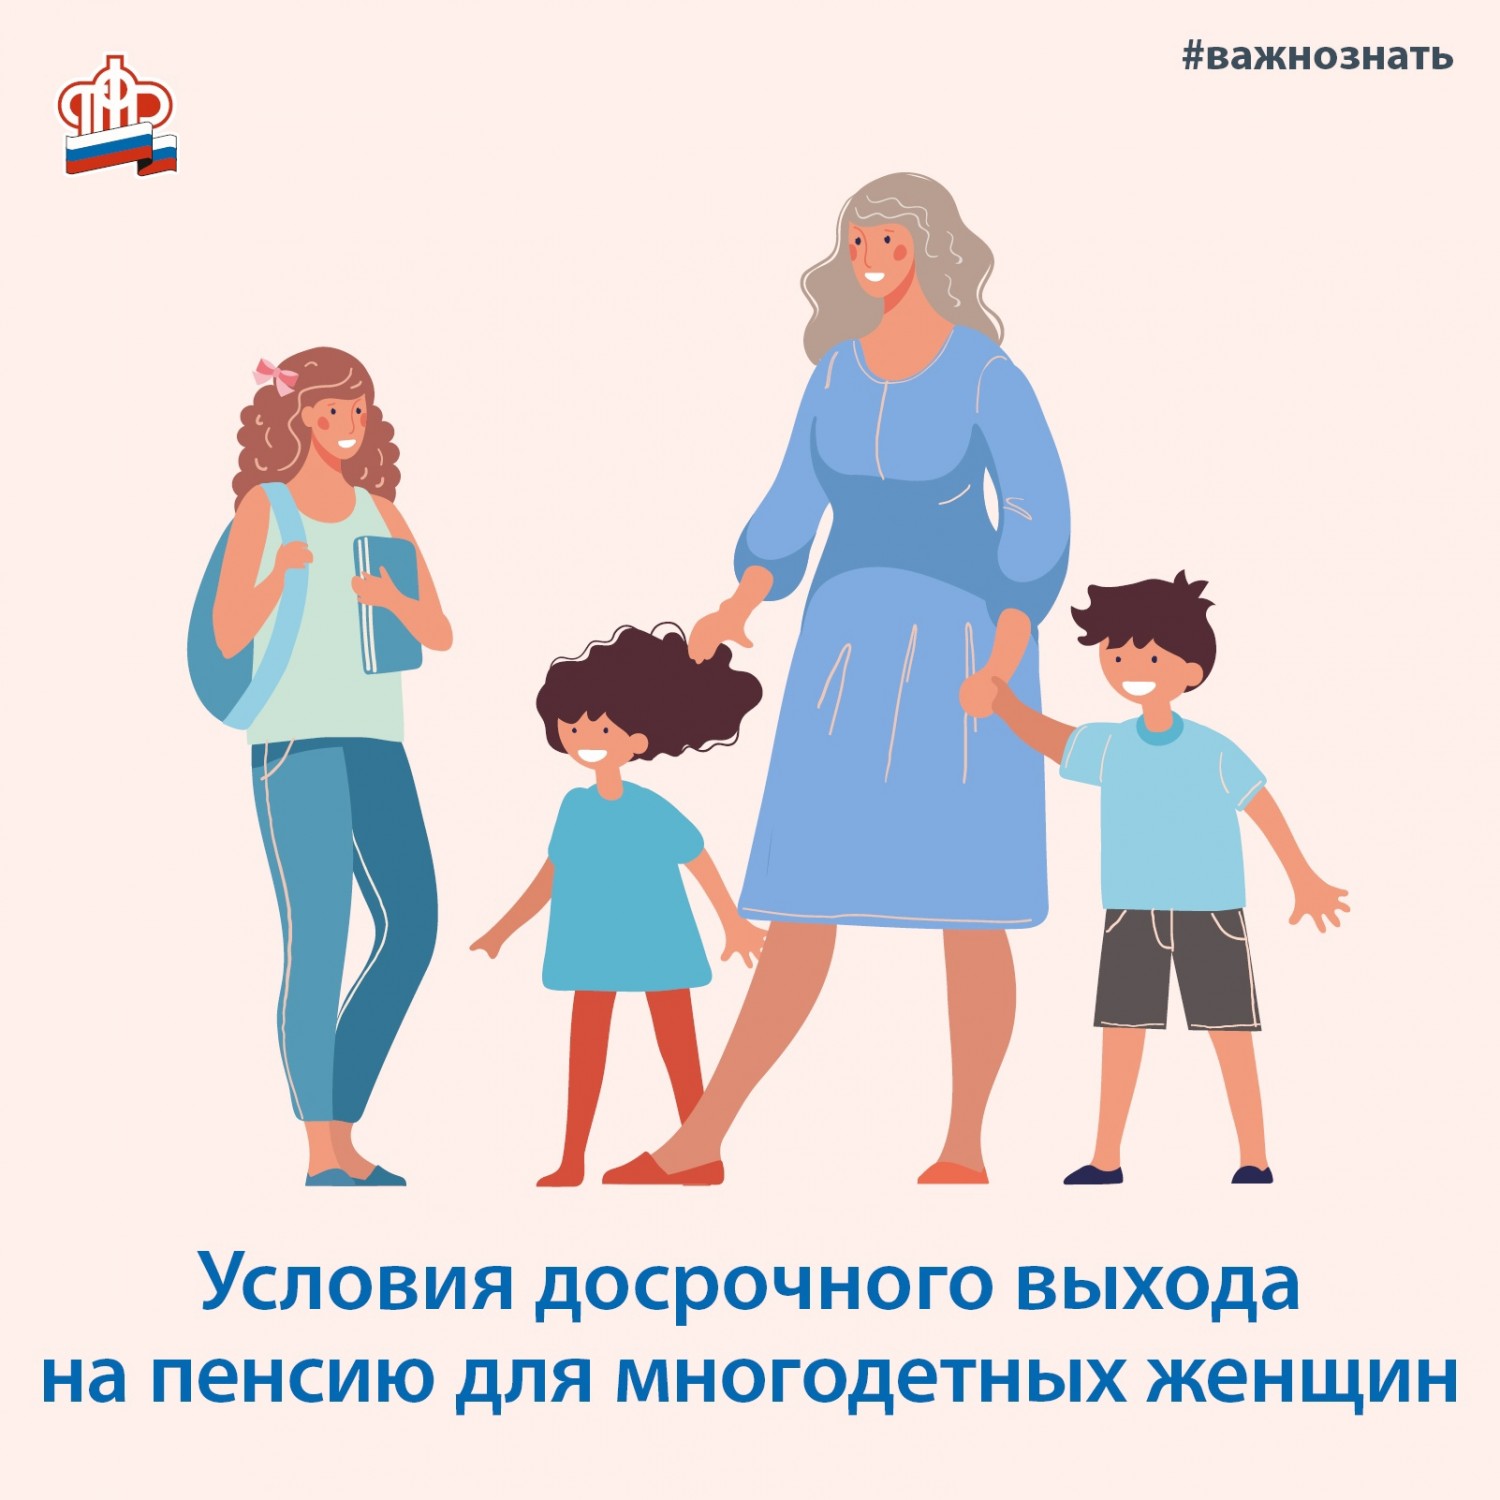 Более 6,5 тысяч многодетных мам в Кузбассе вышли на пенсию досрочно